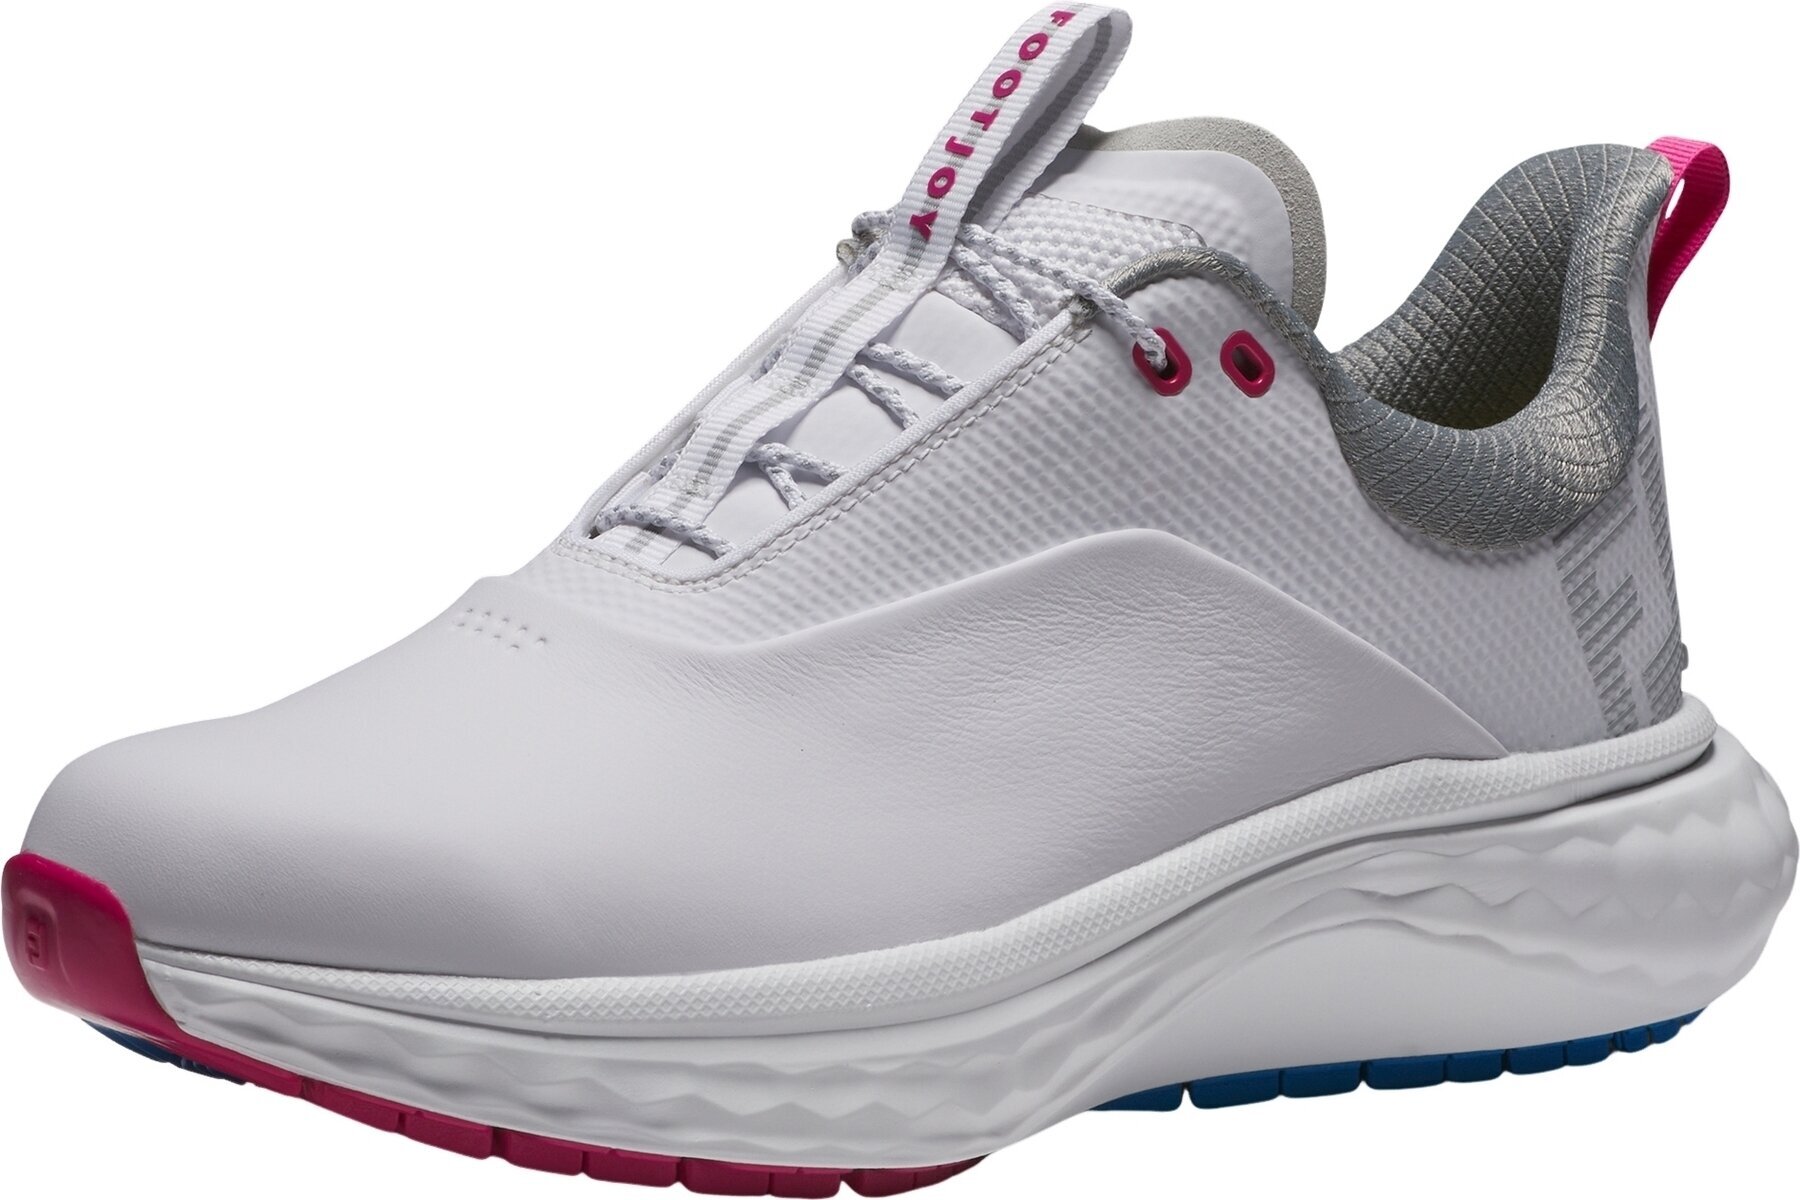 Calçado de golfe para mulher Footjoy Quantum Womens Golf Shoes White/Blue/Pink 38,5